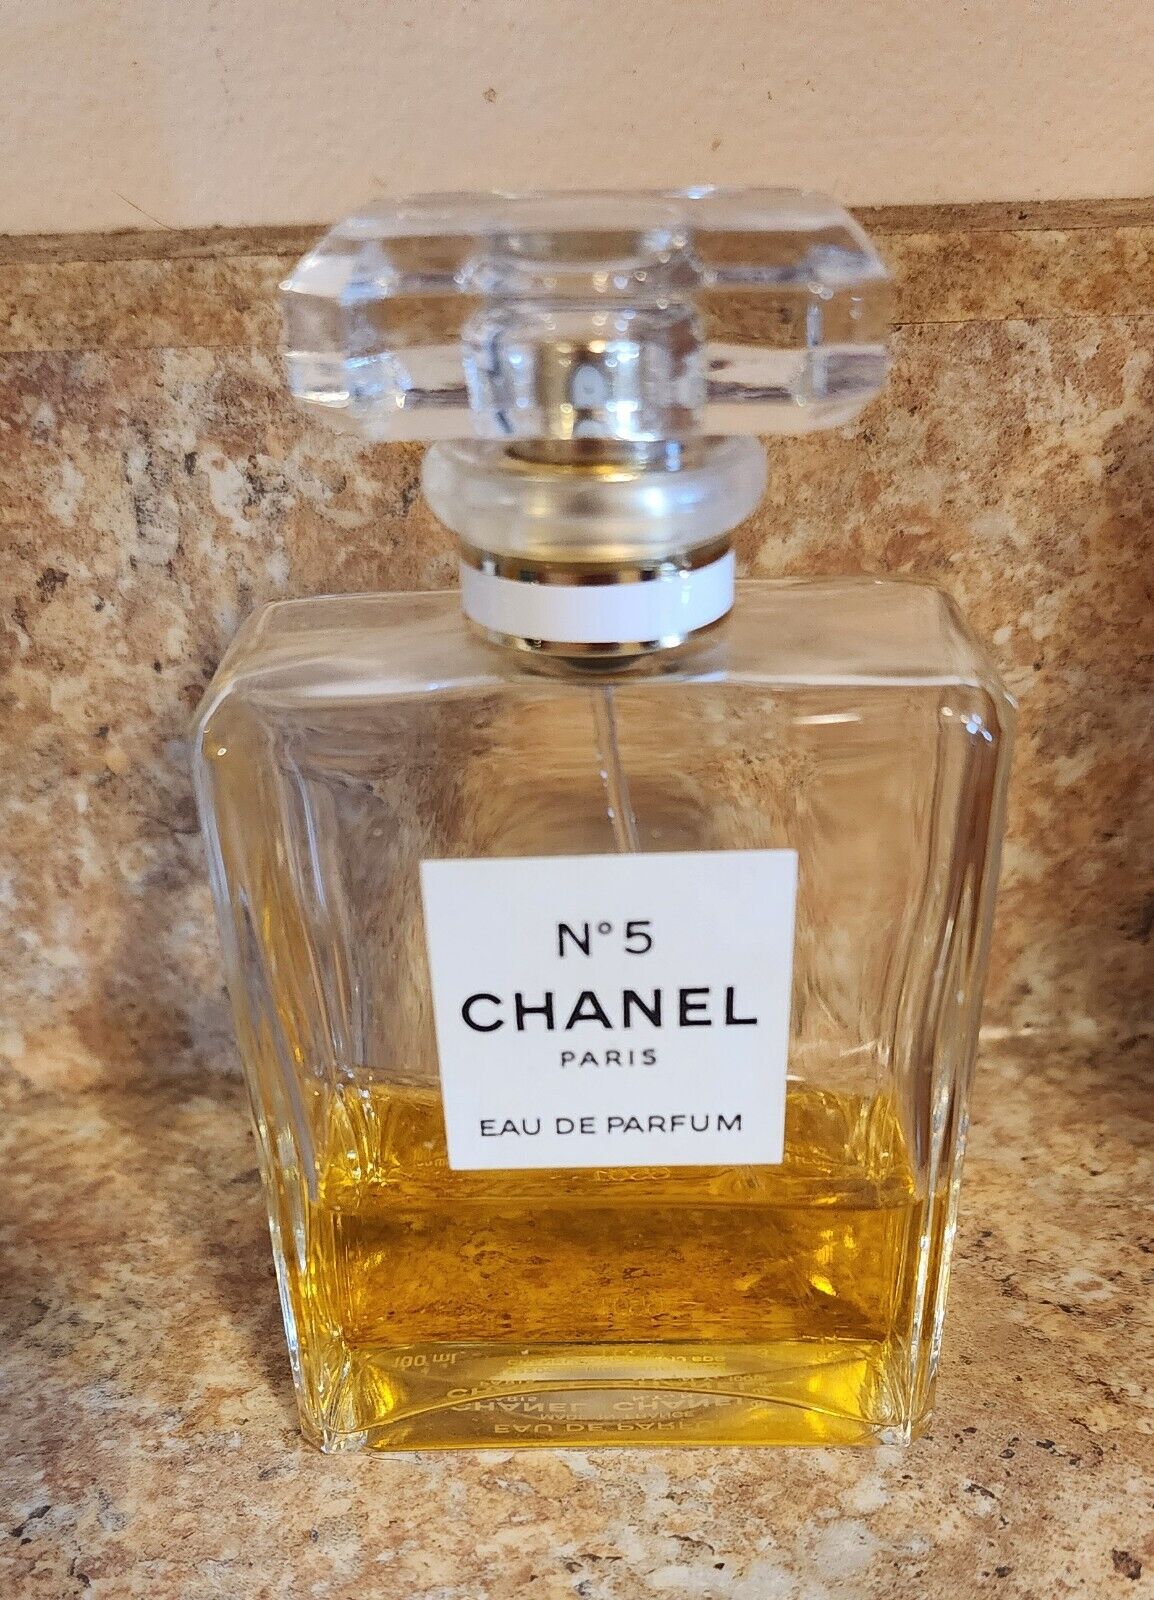  CHANEL NO. 5 PARIS EAU DE PARFUM Perfume 1.7 FL. OZ. Bottle 1/3 Full